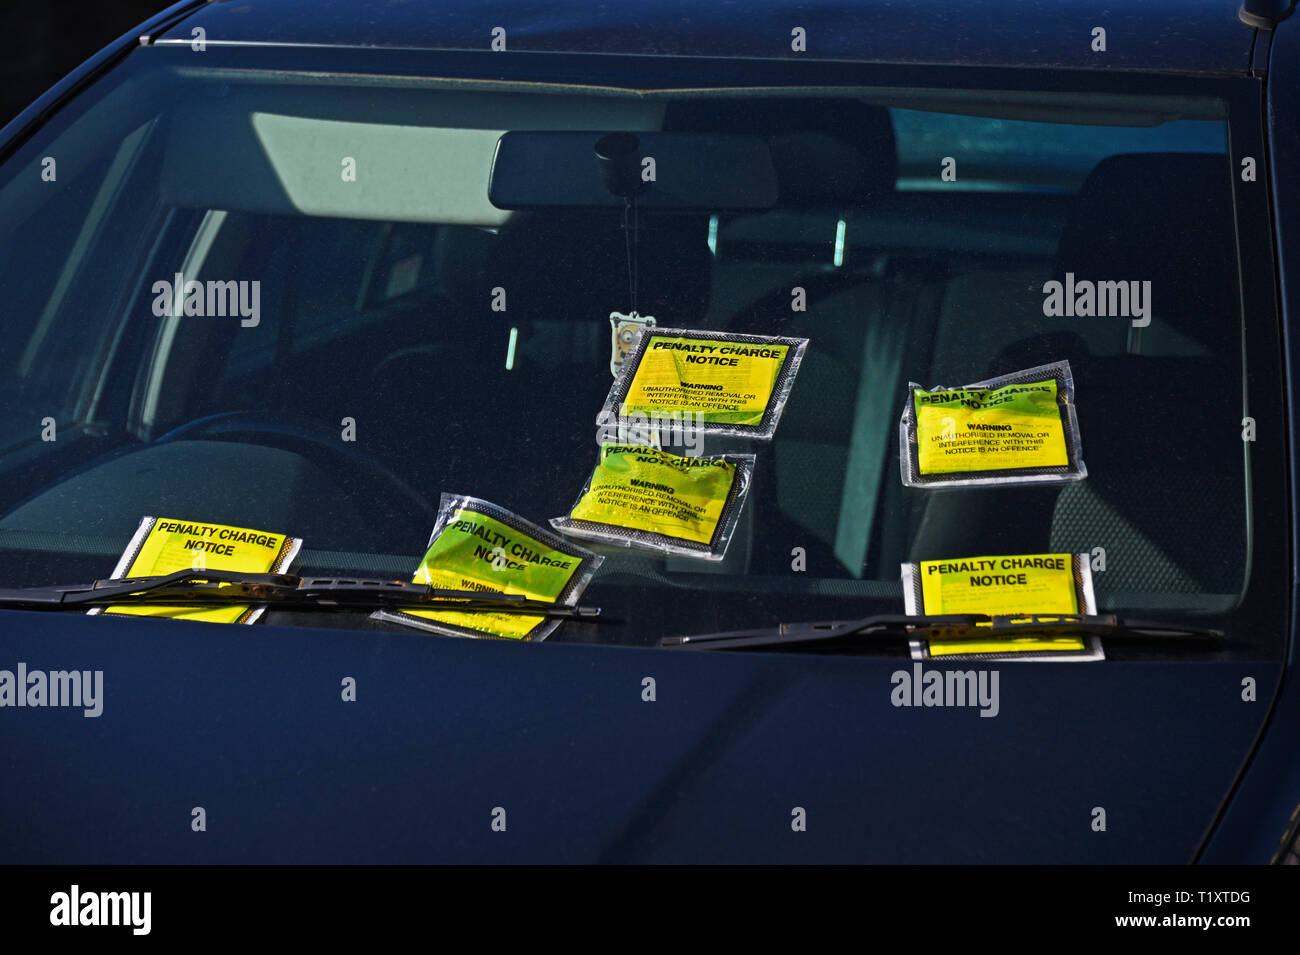 Frontscheibe von illegal geparkten Auto auf Doppel-gelben Linien mit sechs Gebühr Hinweise. Parkside Road, Kendal, Cumbria, England, Vereinigtes Königreich, Eu Stockfoto